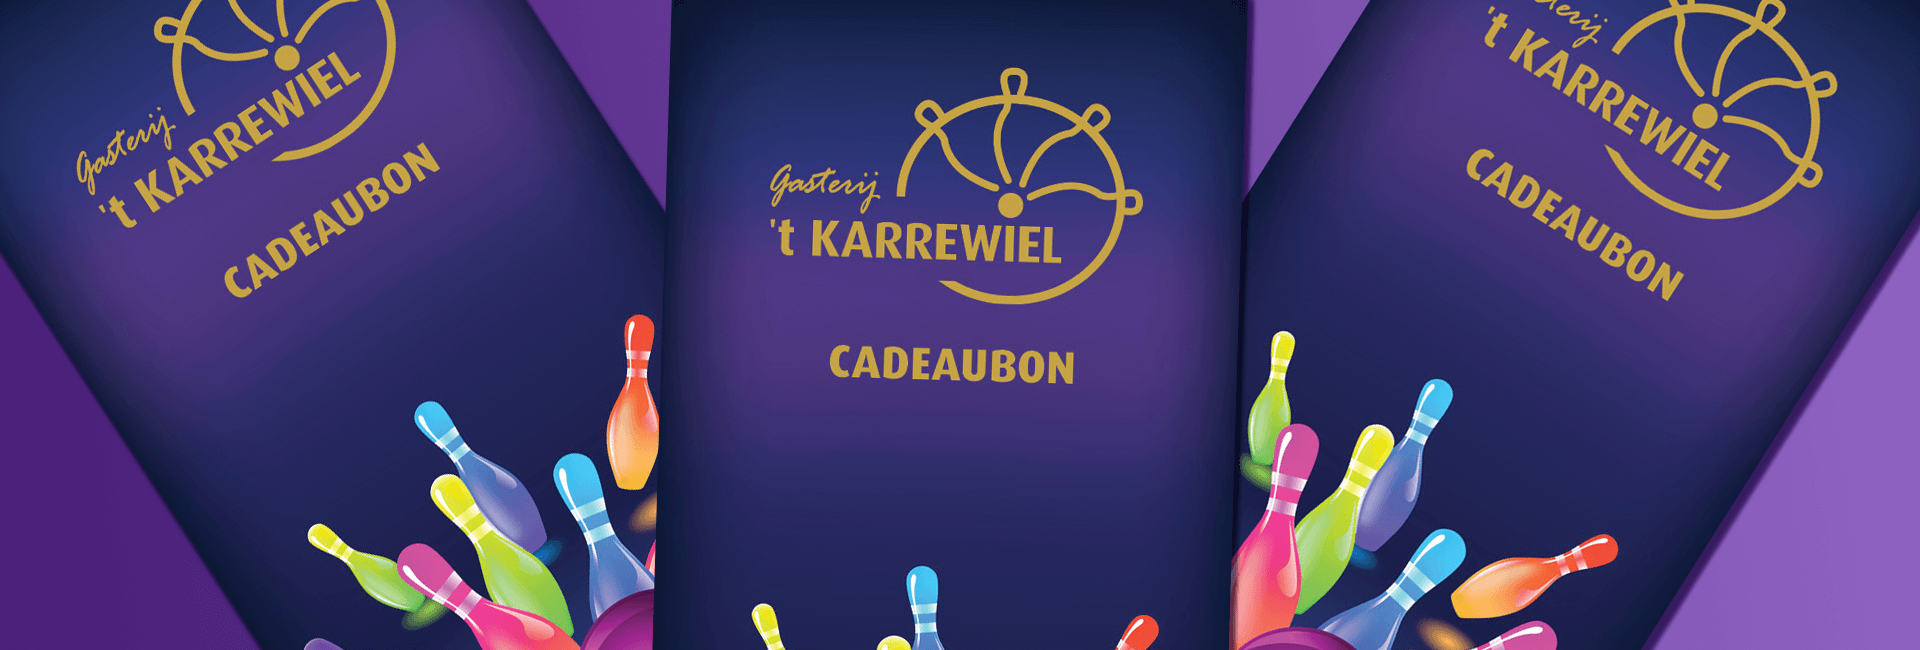 Met een cadeaubon van Gasterij 't Karrewiel doet u iedereen een plezier!